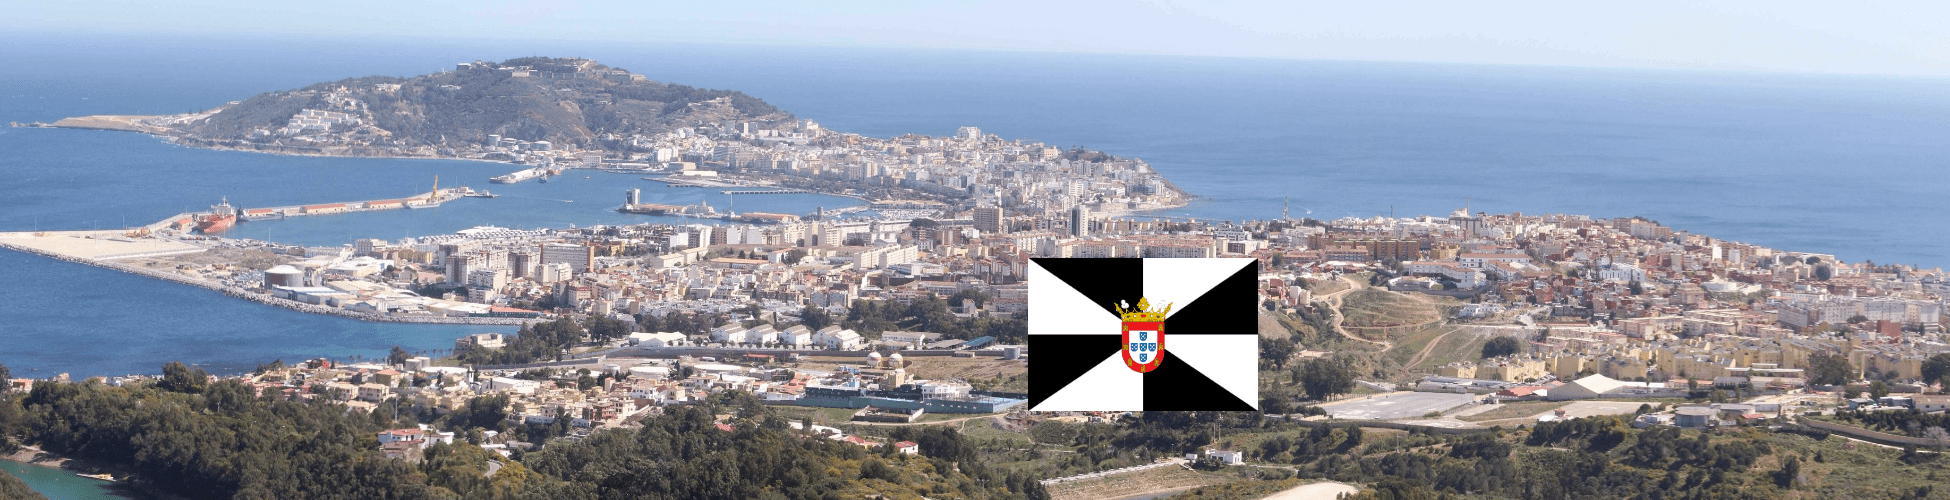 Immagine del porto di arrivo Ceuta per la rotta traghetto Algeciras - Ceuta